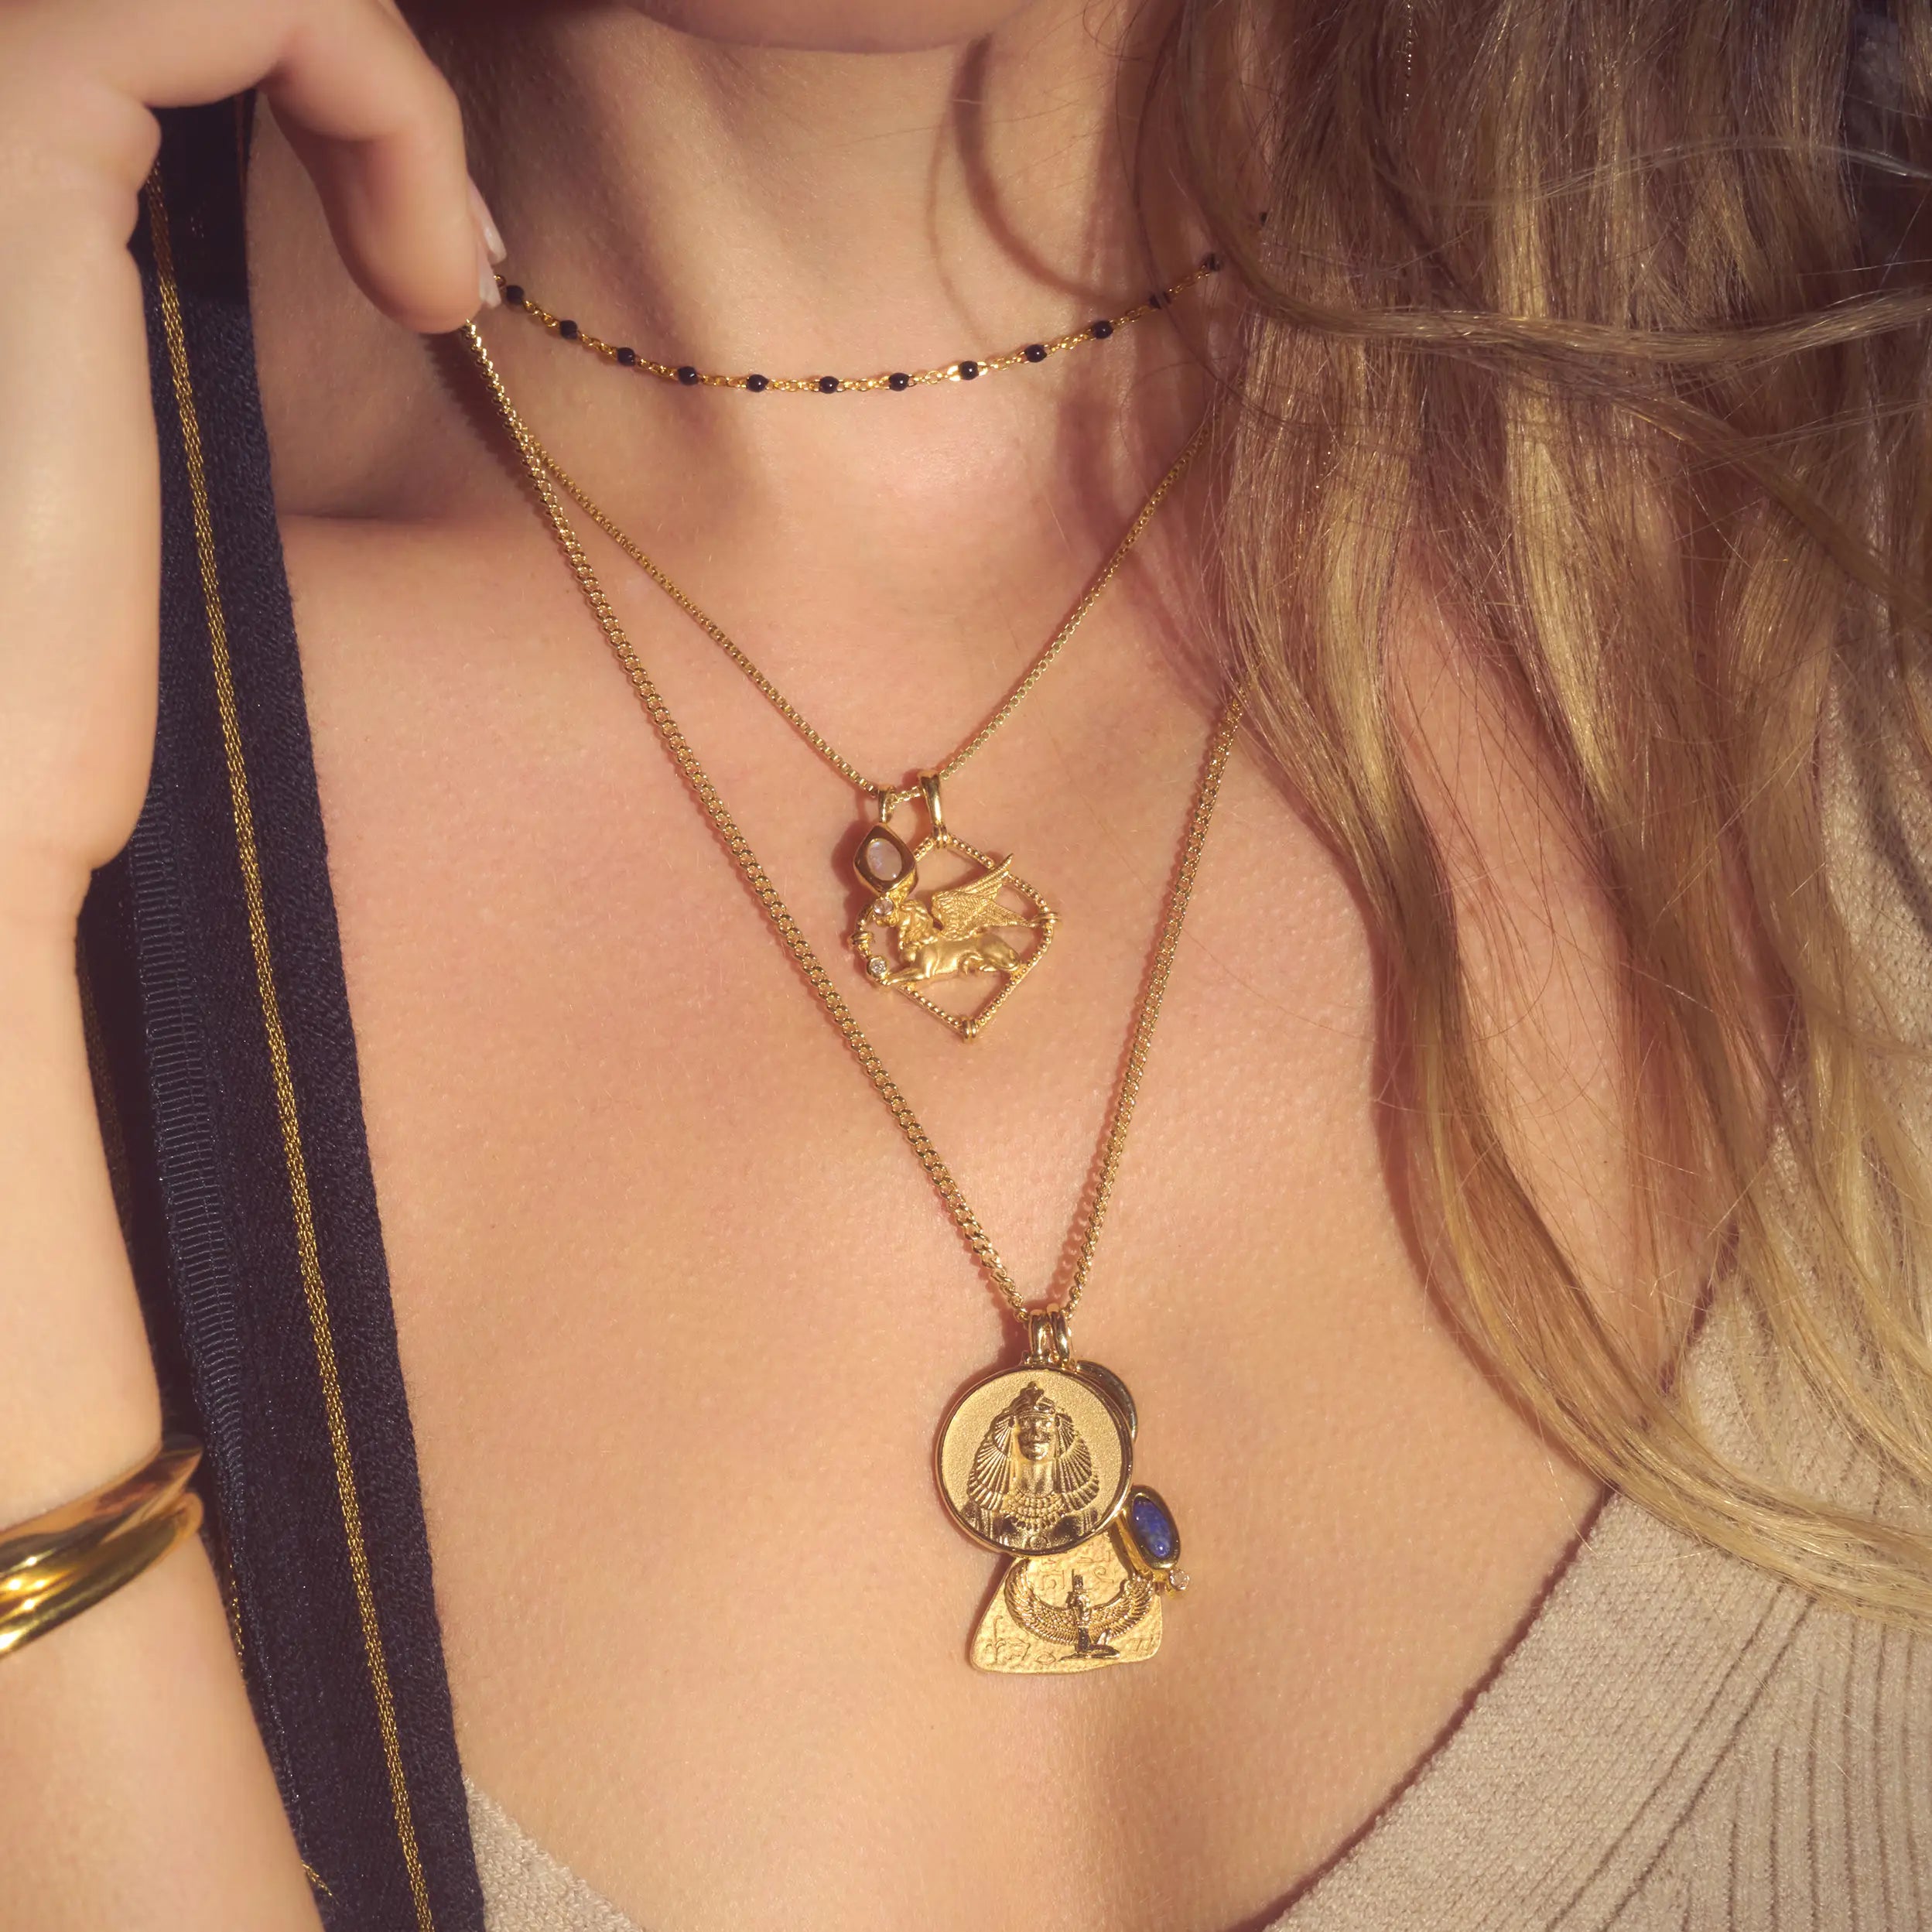 Style Your Charm Necklaces Like A Pro | HerZindagi